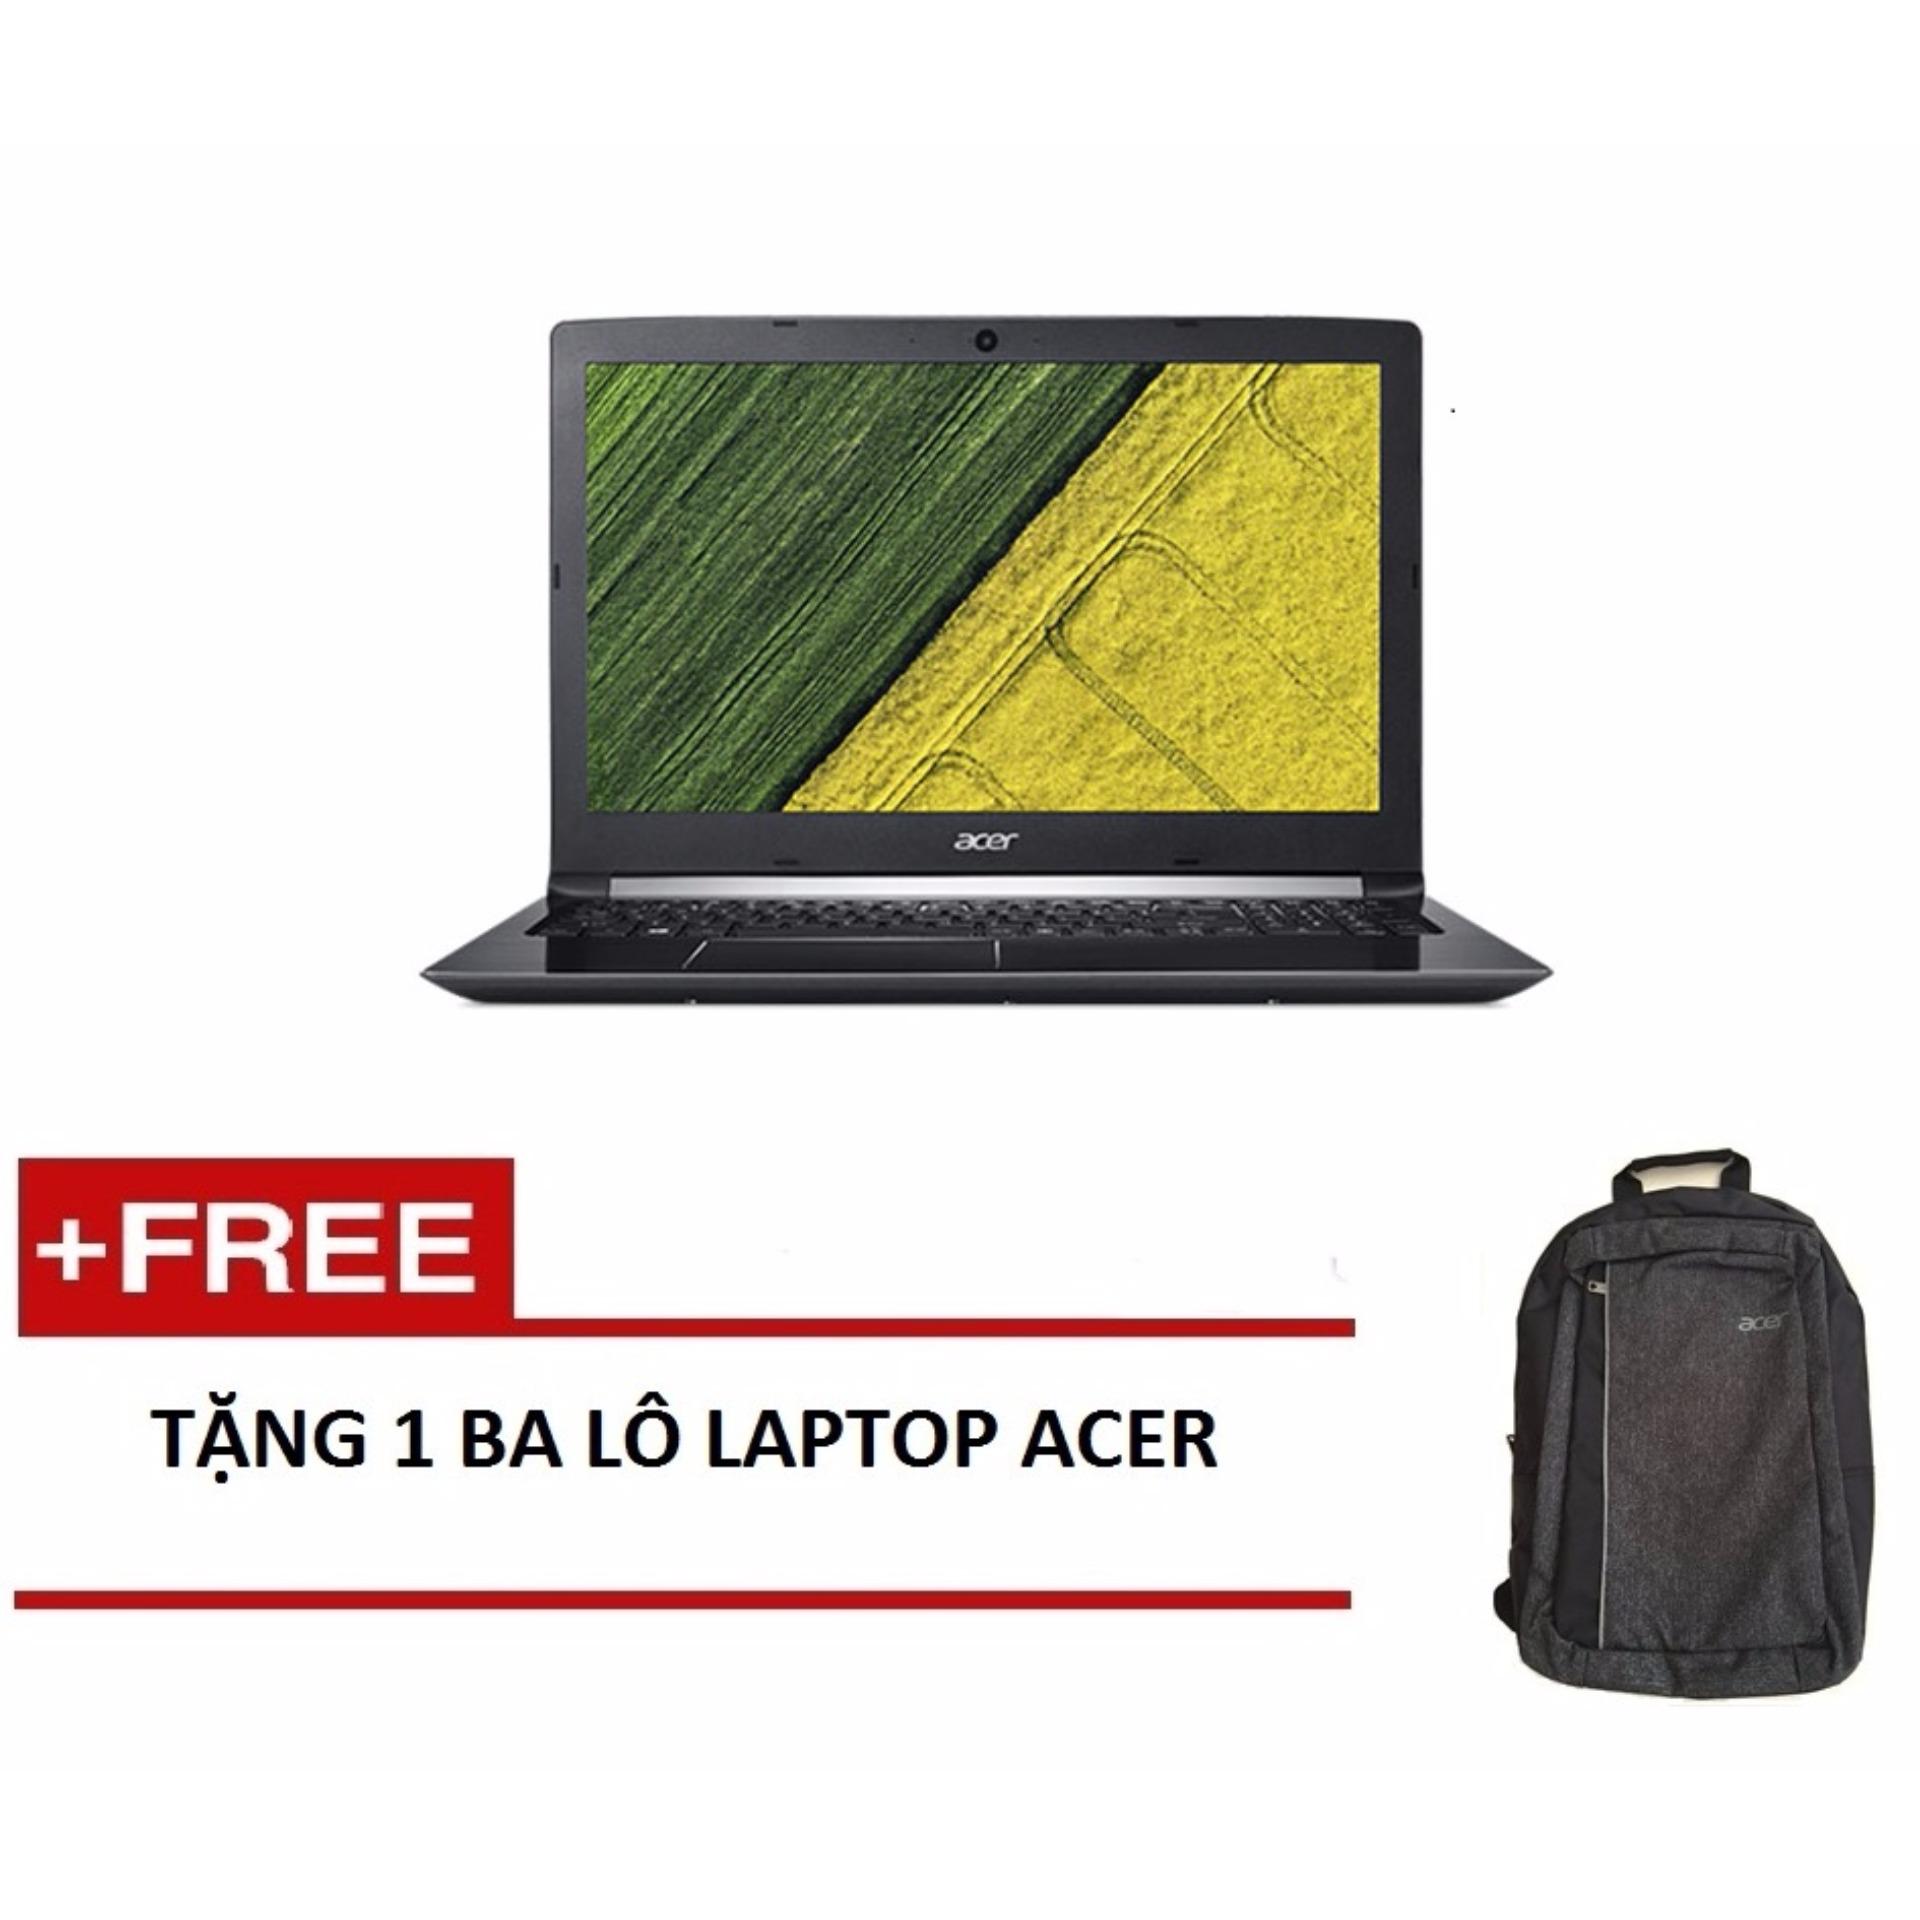 Laptop Acer Aspire A315-51-37LW NX.GNPSV.024 i3-7130U/4G/500GB/15.6HD (Đen) + Tặng 1balo laptop ACER - Hãng phân phối chính thức